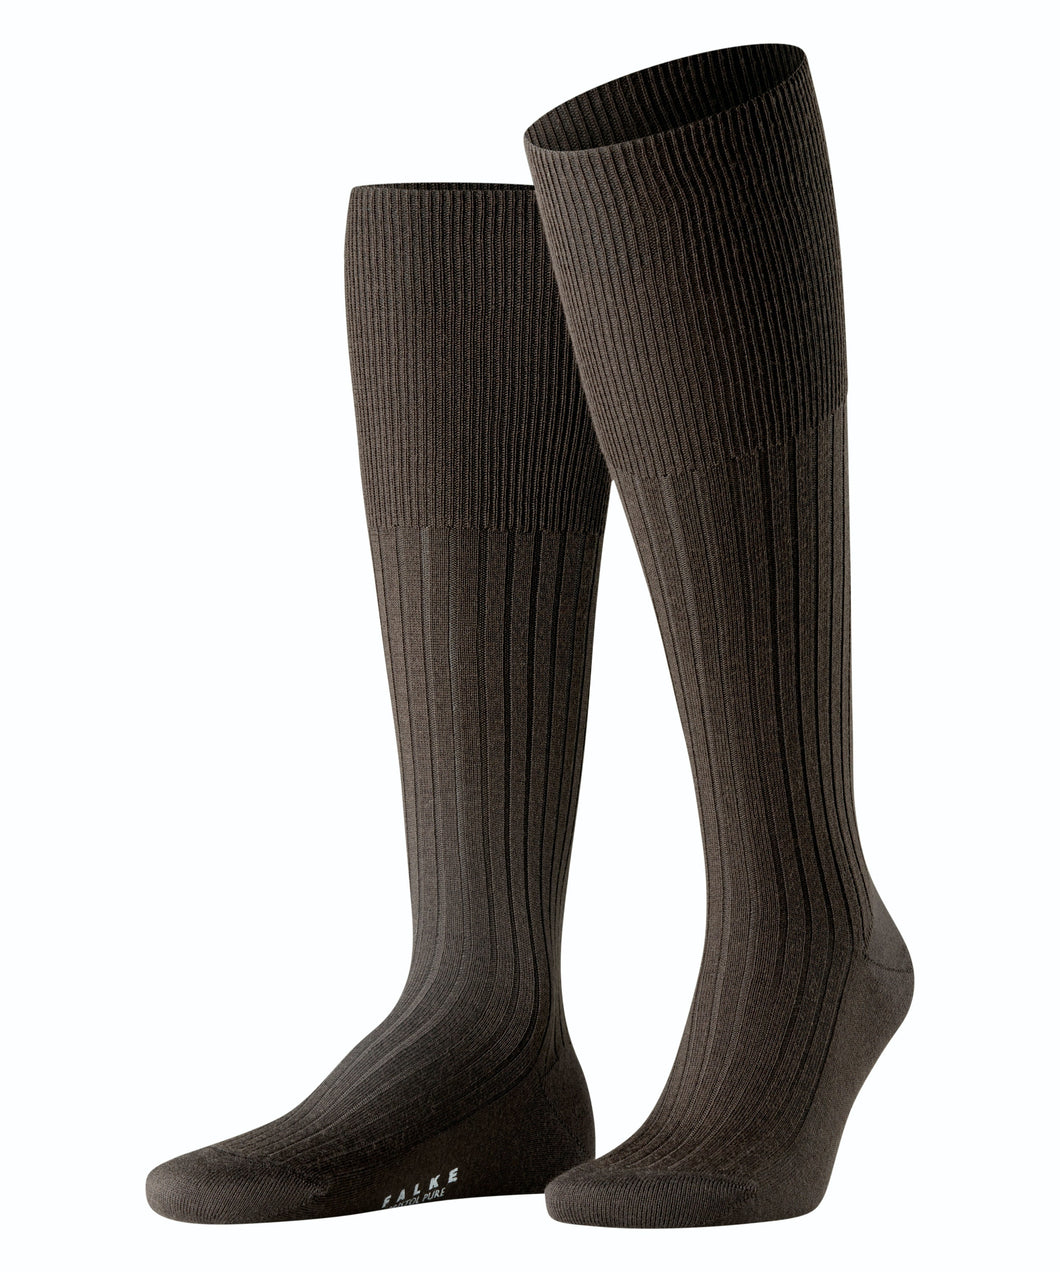 Bristol Brown Wool knee-high Socks - The Bespoke Shop 